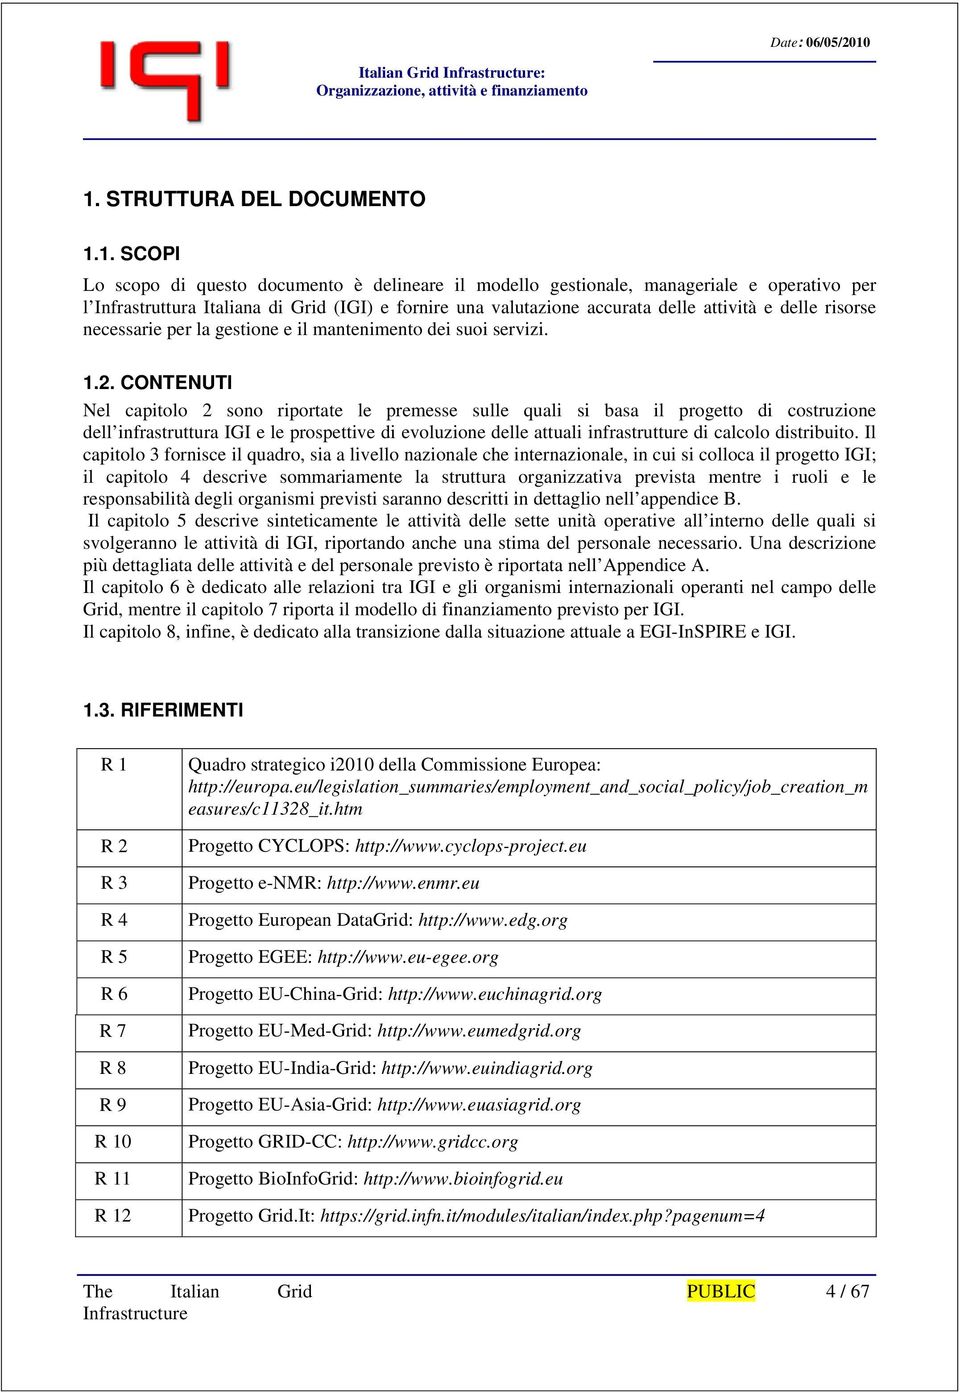 1. SCOPI Lo scopo di questo documento è delineare il modello gestionale, manageriale e operativo per l Infrastruttura Italiana di Grid (IGI) e fornire una valutazione accurata delle attività e delle